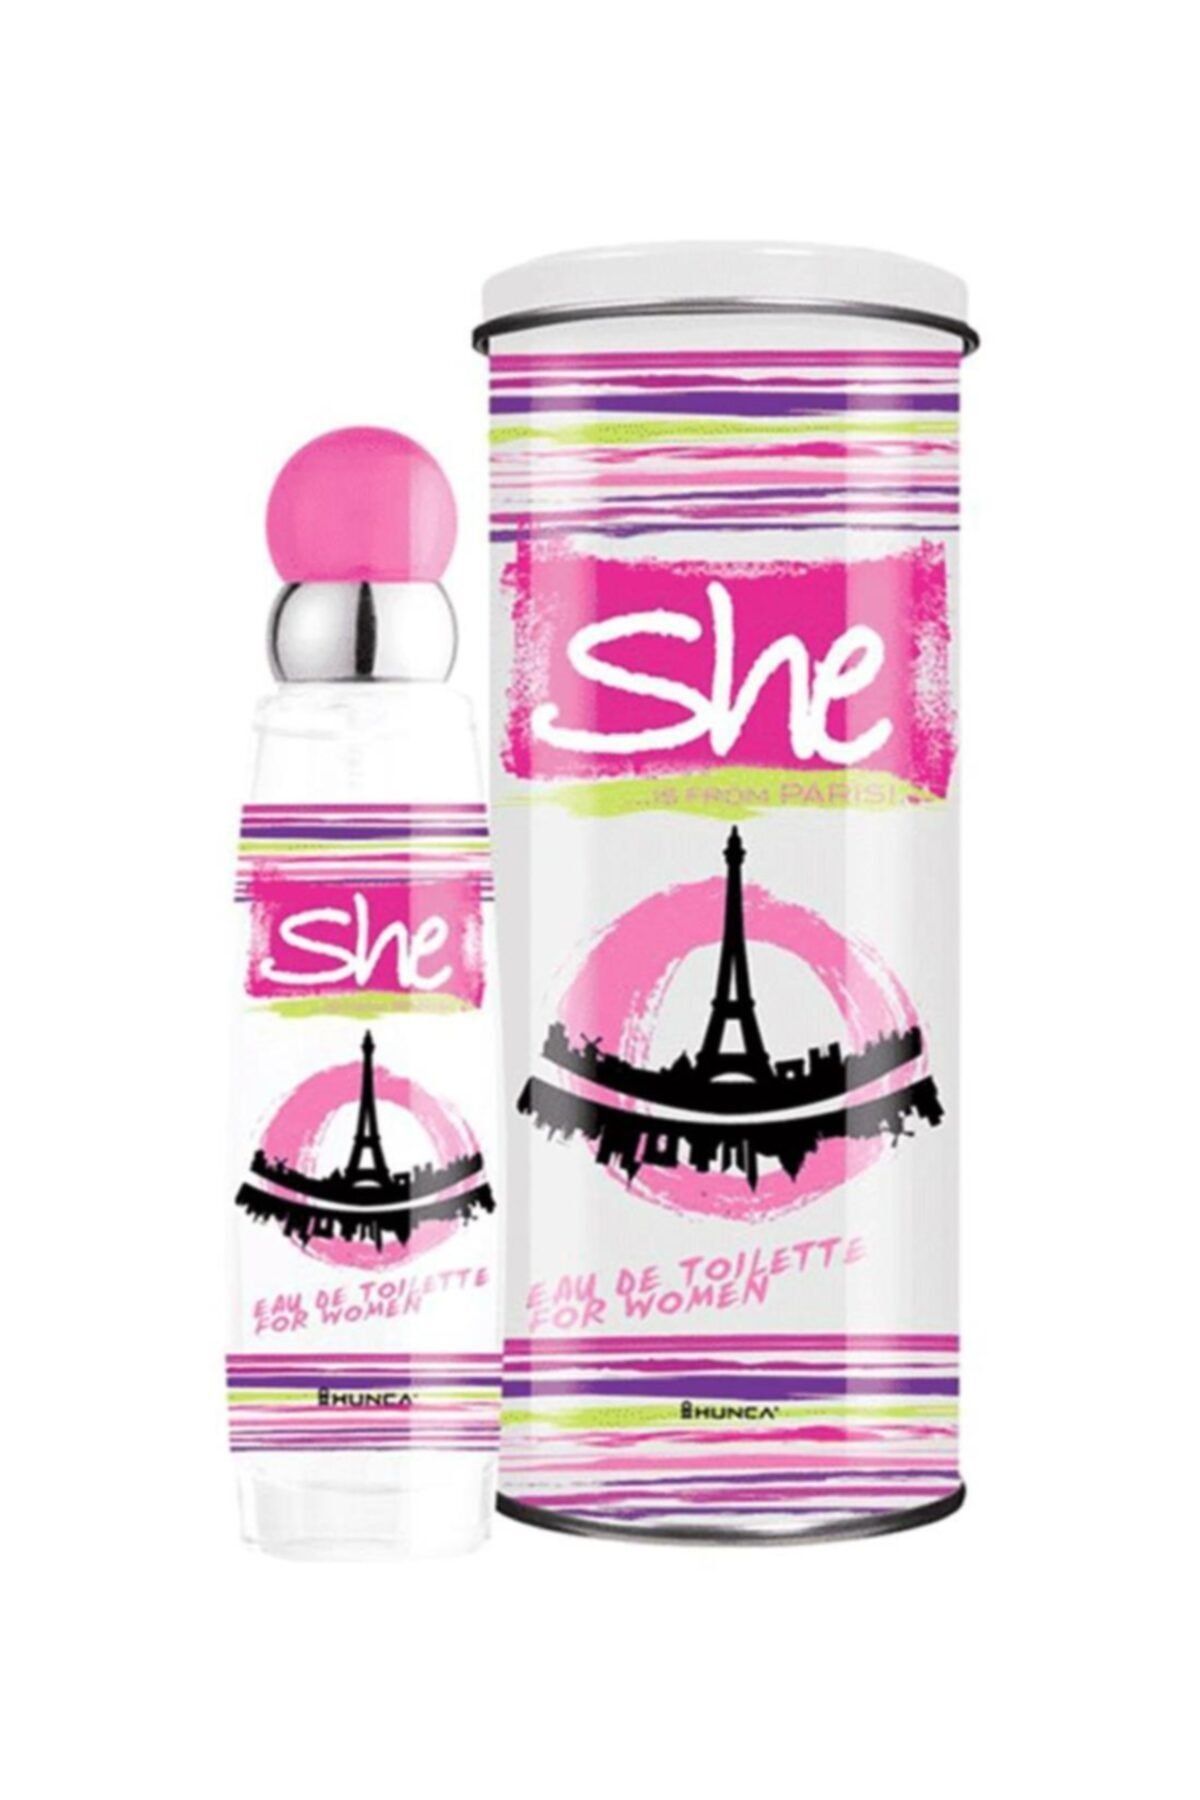 She Paris Kadın Parfüm 50 ml